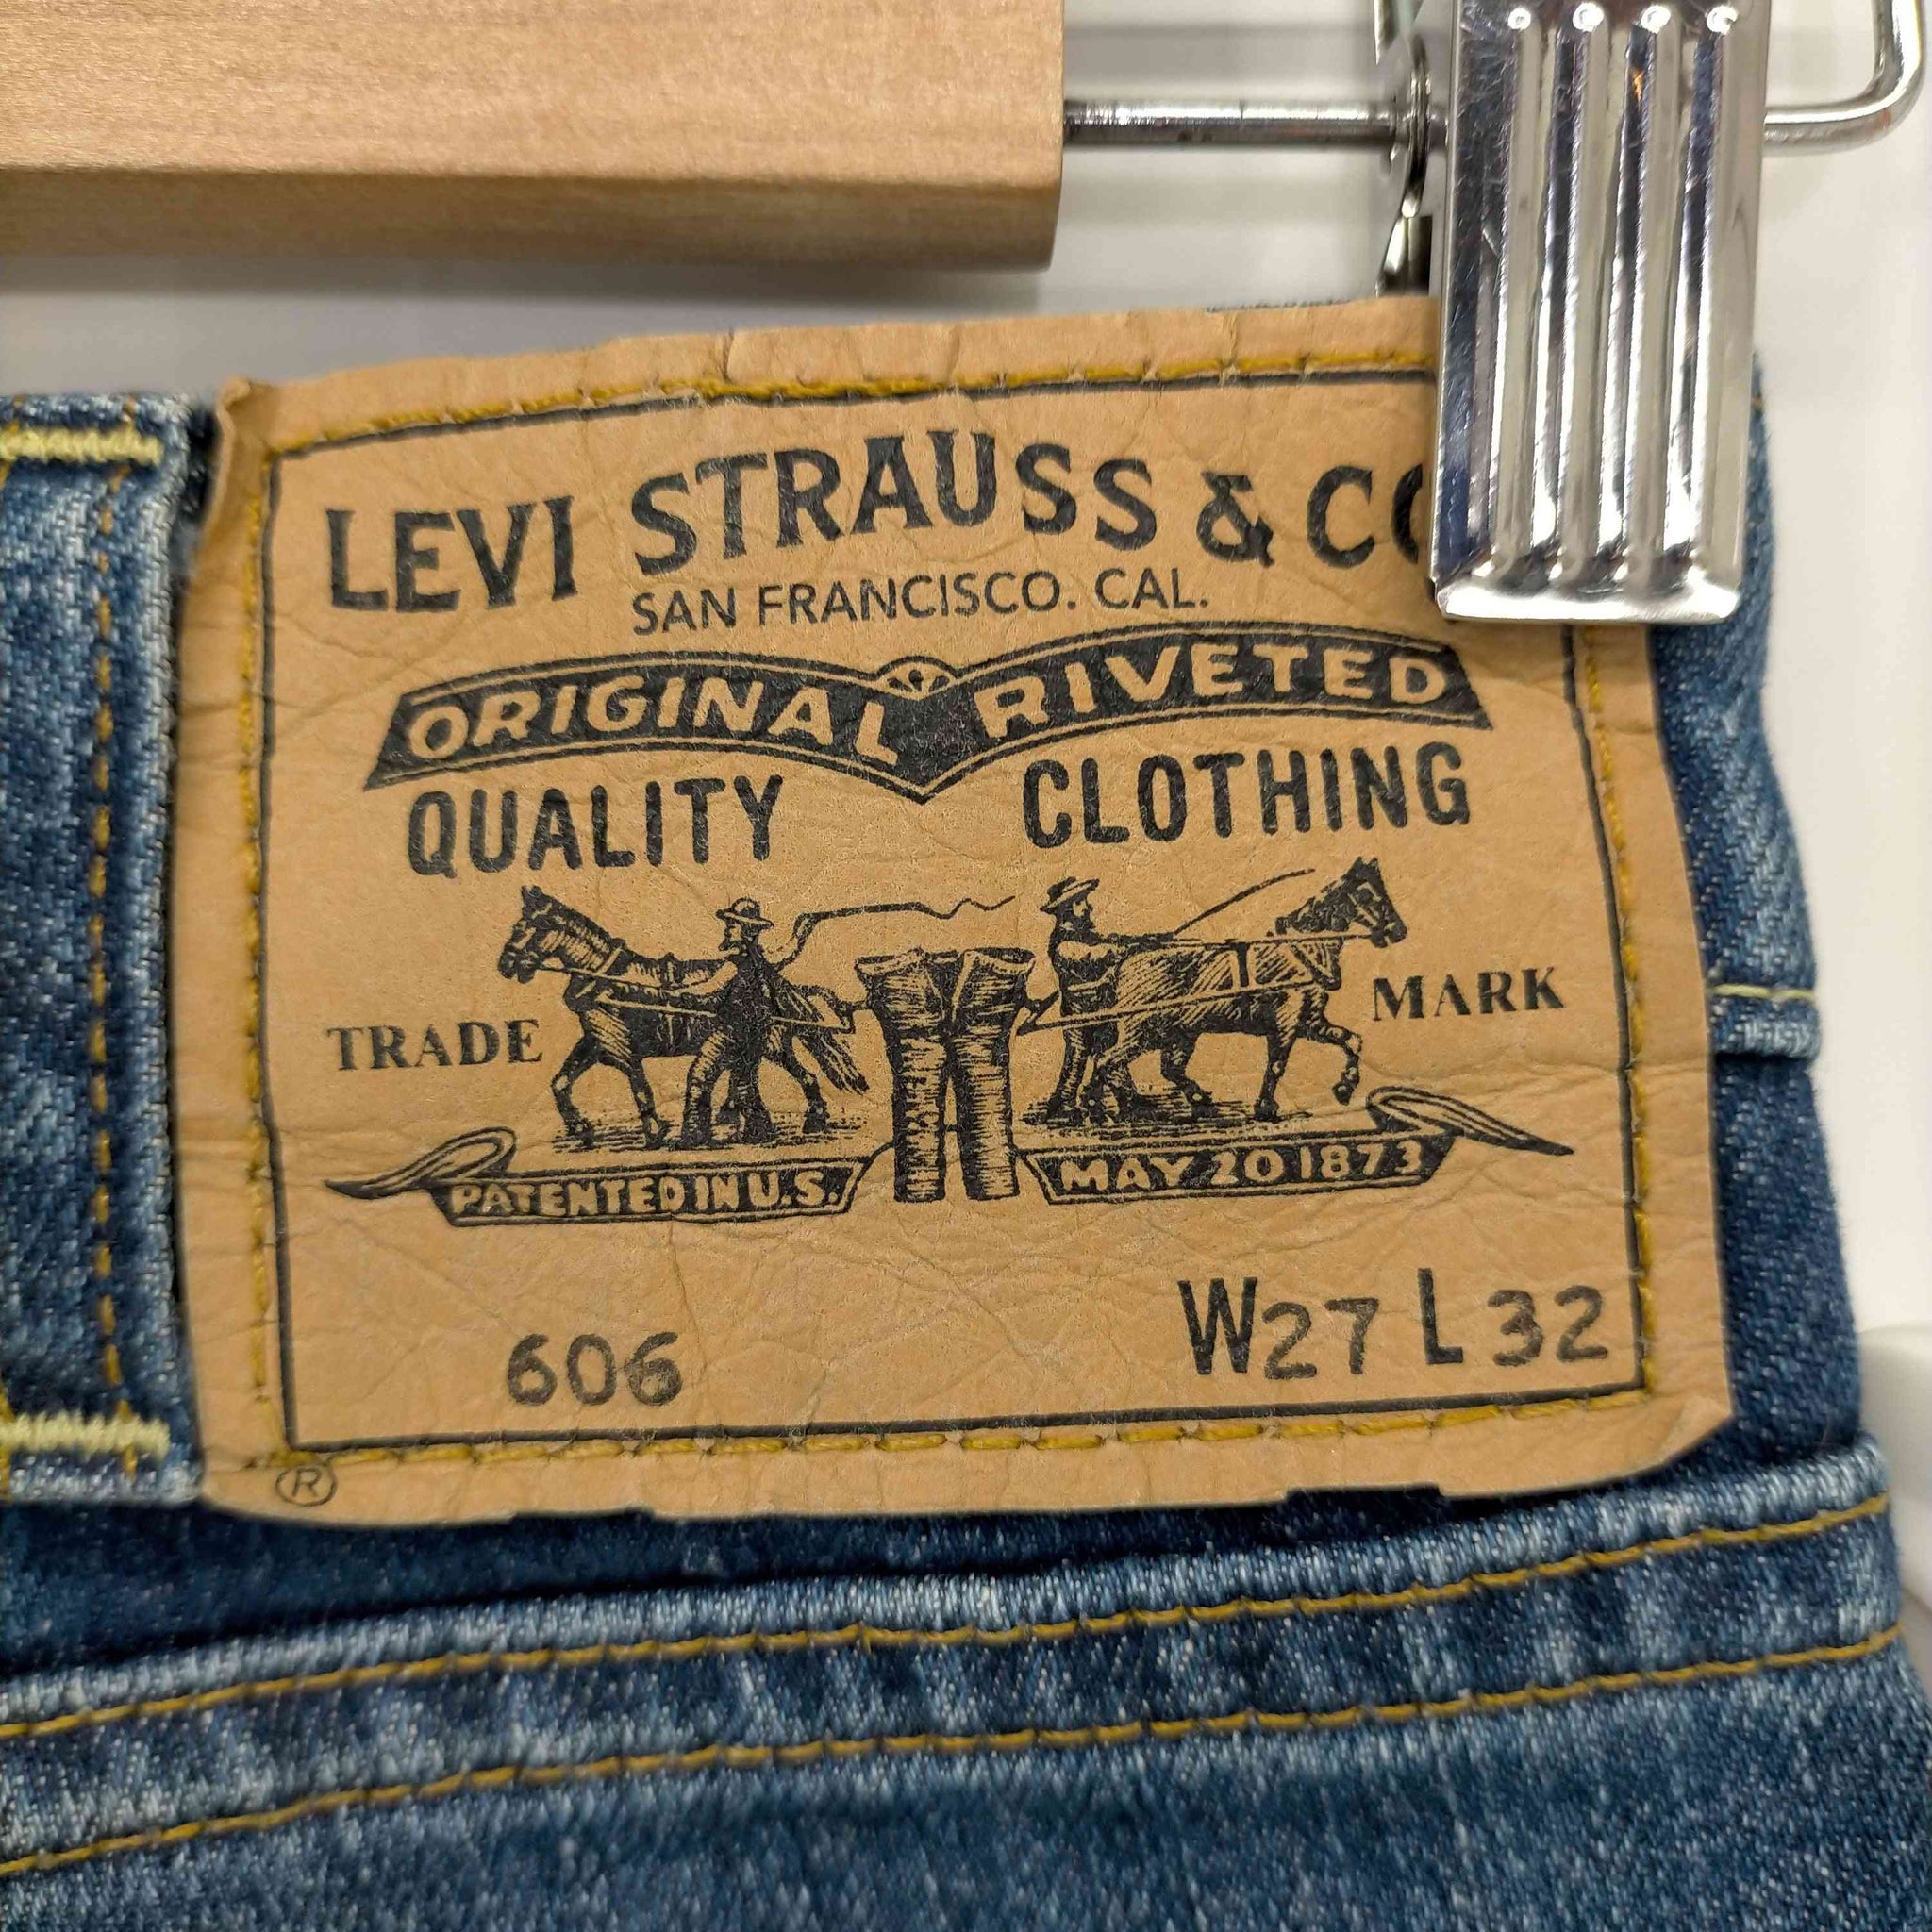 Levis Vintage Clothing(リーバイスヴィンテージクロージング)606 スリムテーパードデニムパンツ bigE 42TALONジップ オレンジタブ